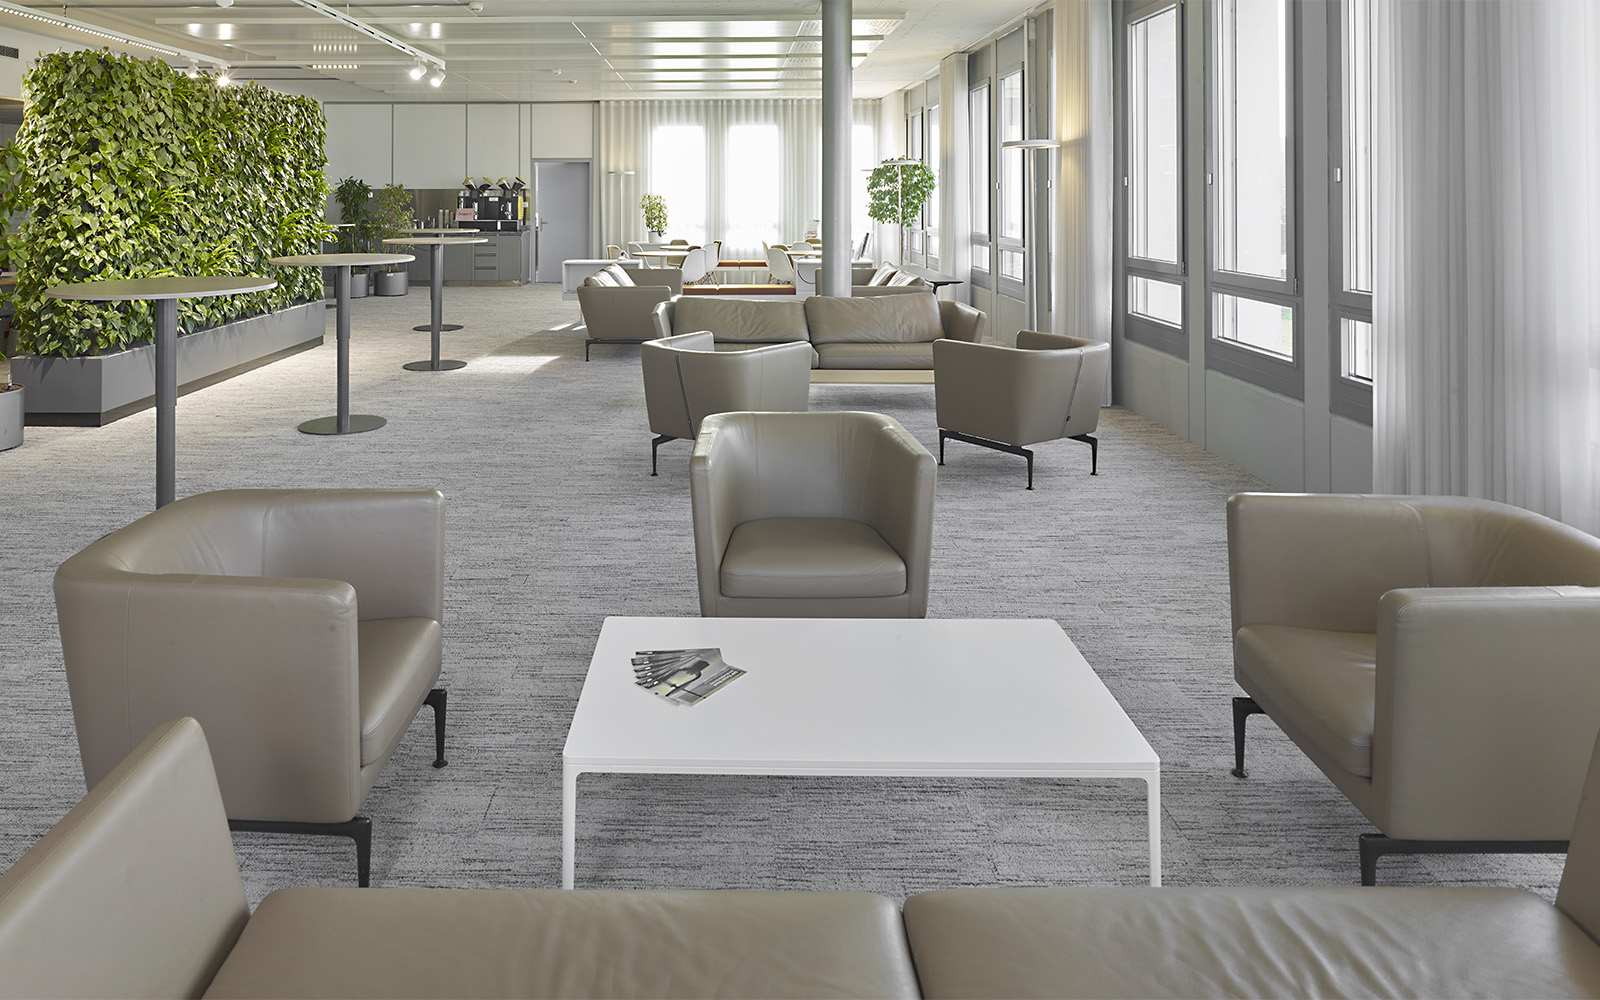 Modern eingerichteter Raum mit Sesseln und Tischen, grünene Pfalnzen und Teppichfliesen